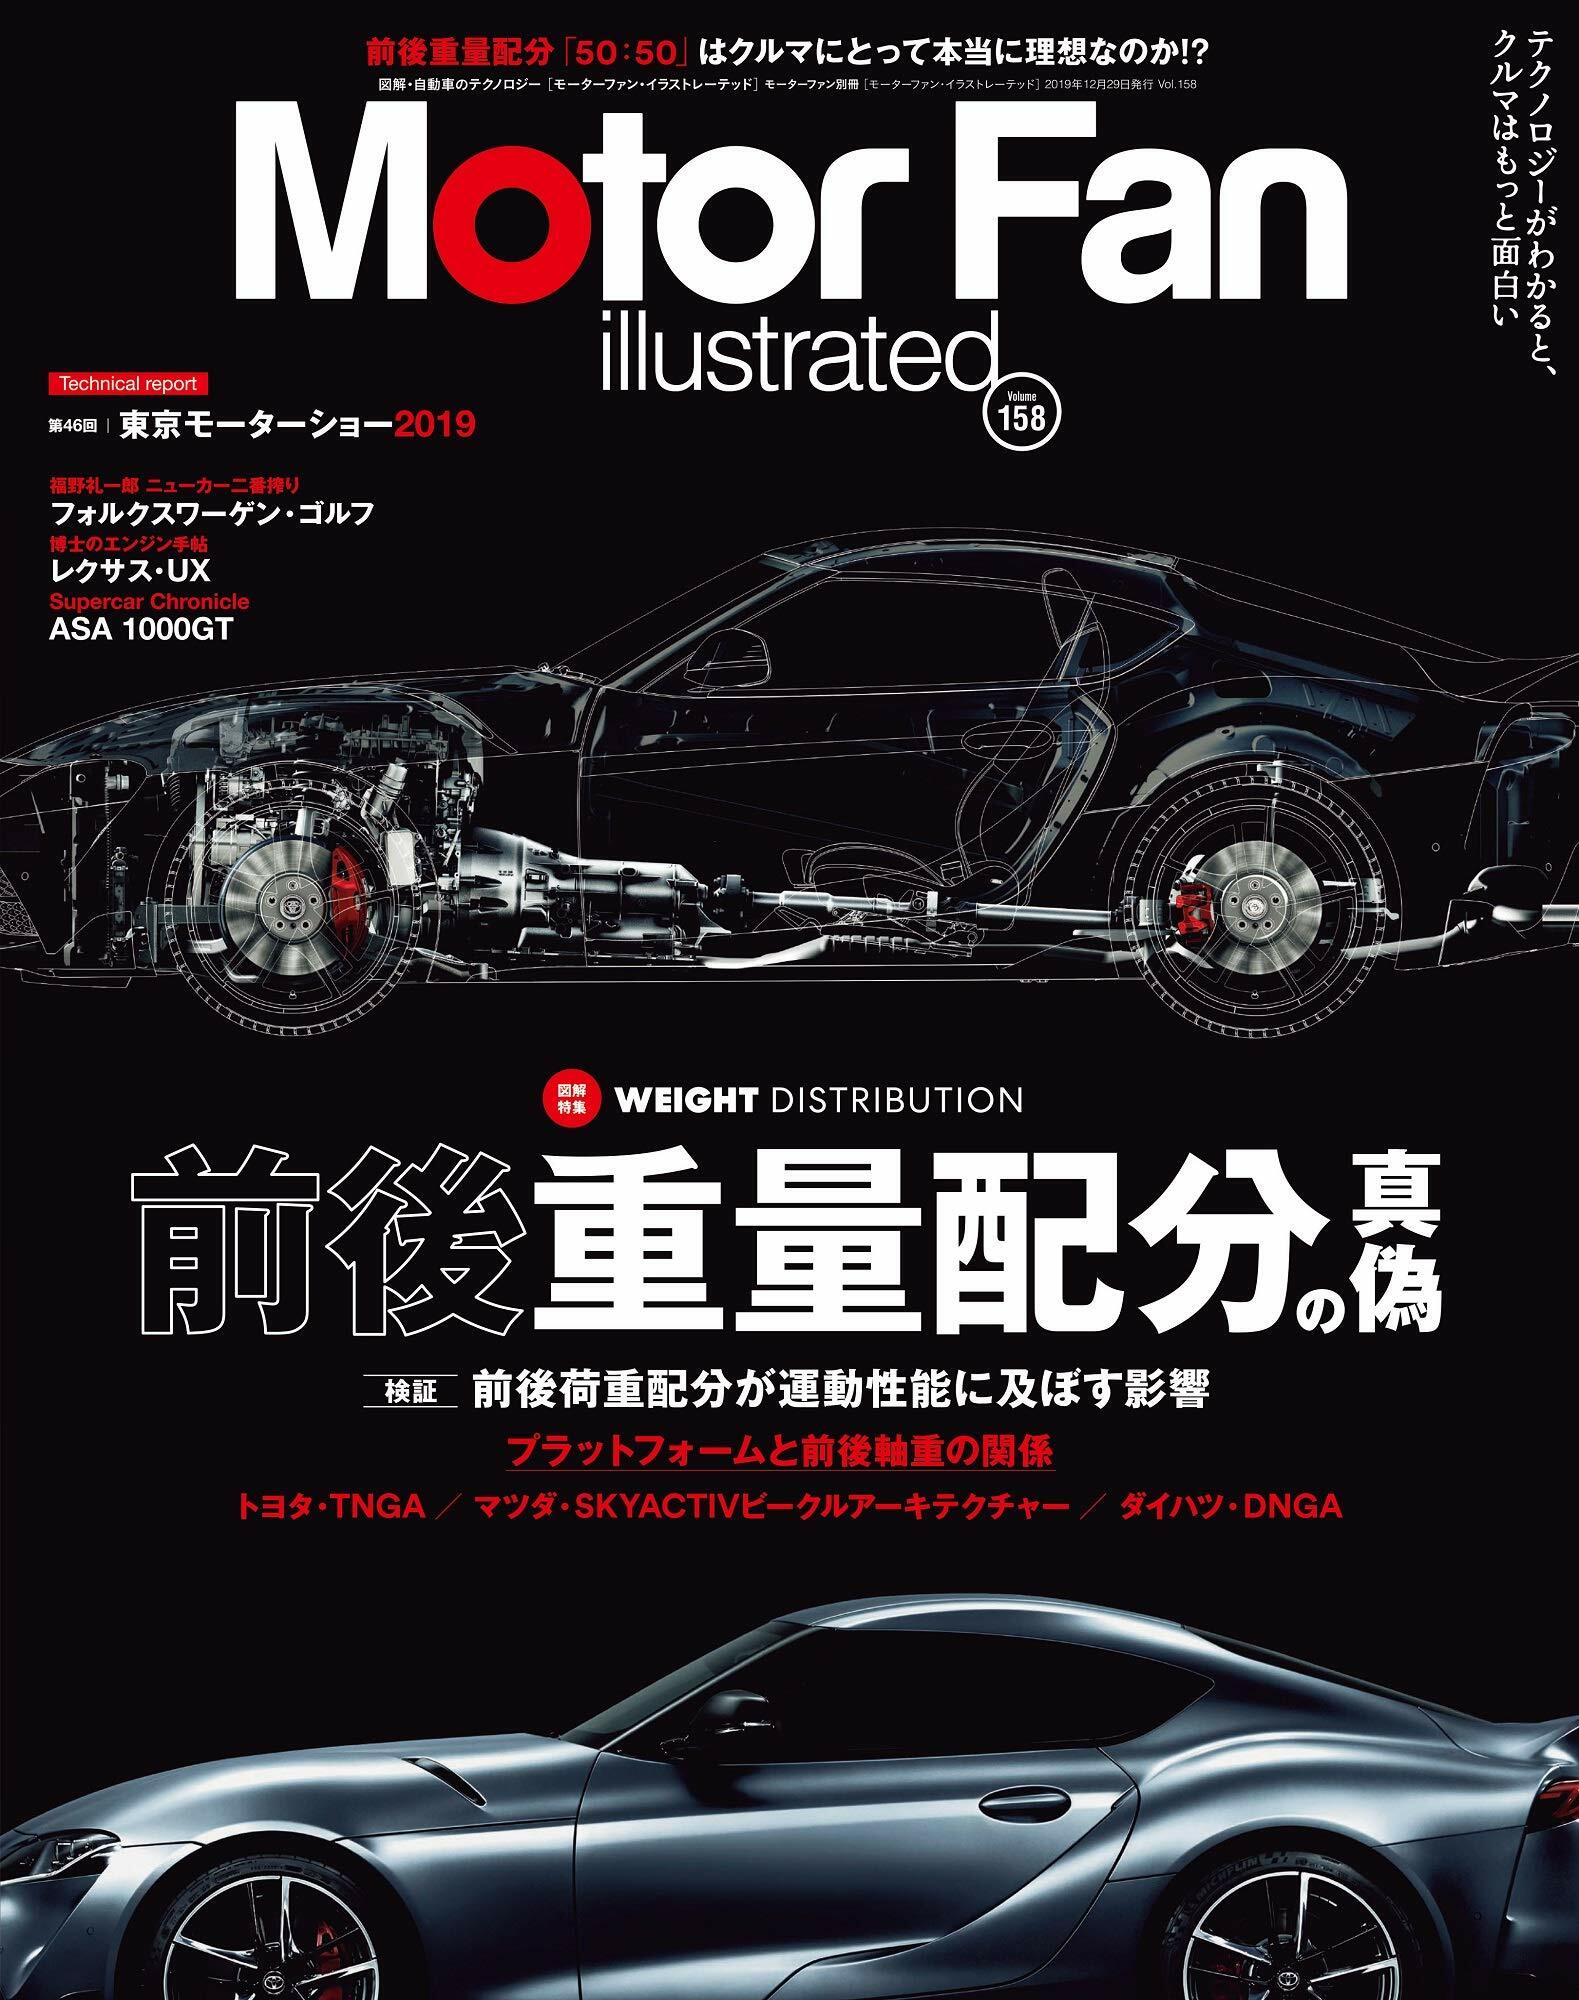 MOTOR FAN illustrated - モ-タ-ファンイラストレ-テッド - Vol.158 (モ-タ-ファン別冊)